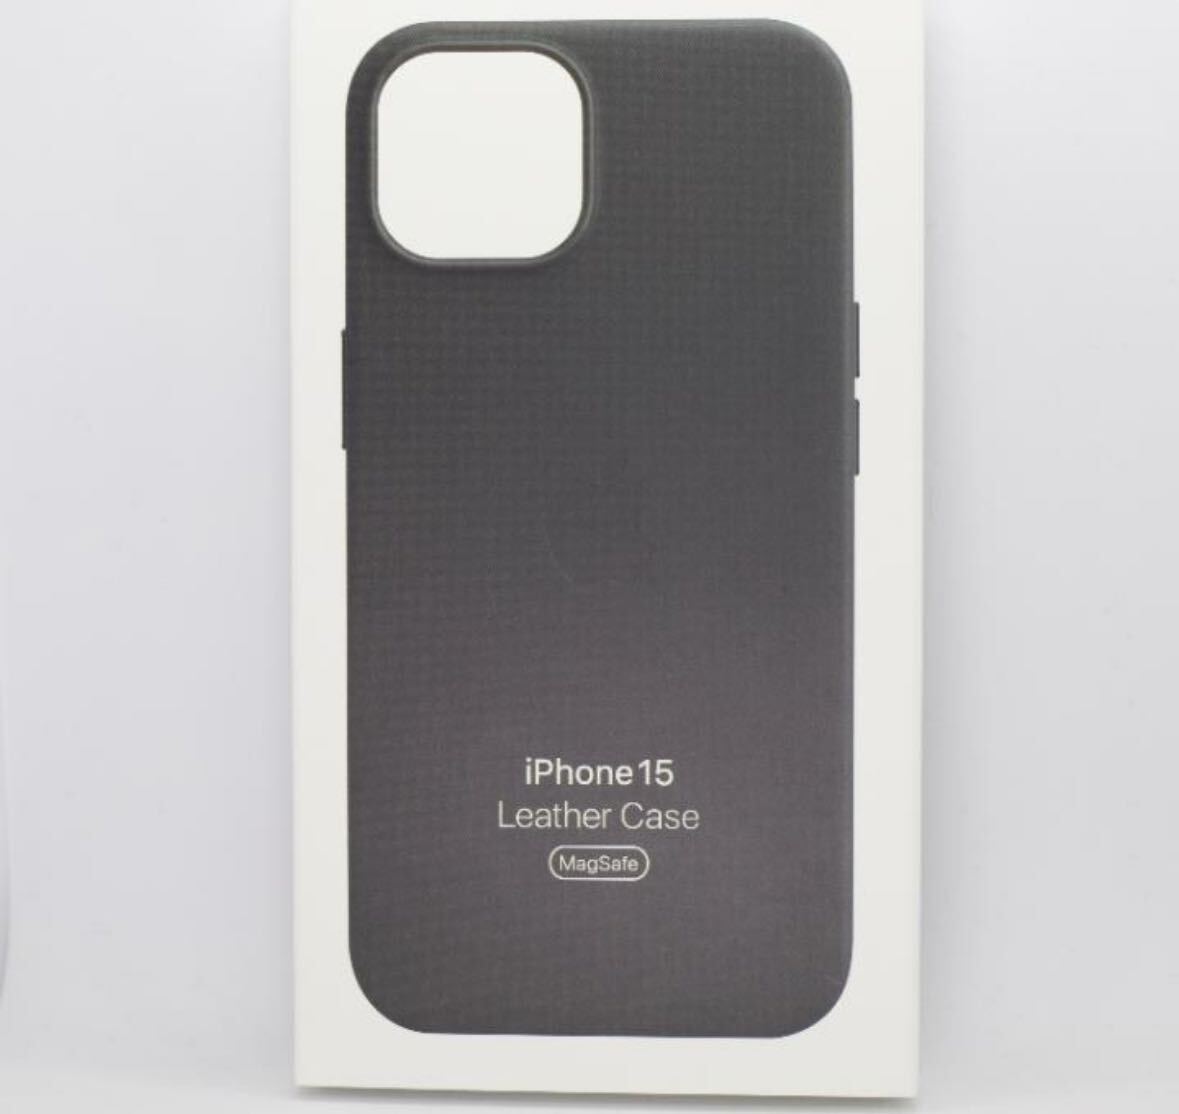 新品-純正互換品-iPhone15 - レザーケース ブラックの画像1